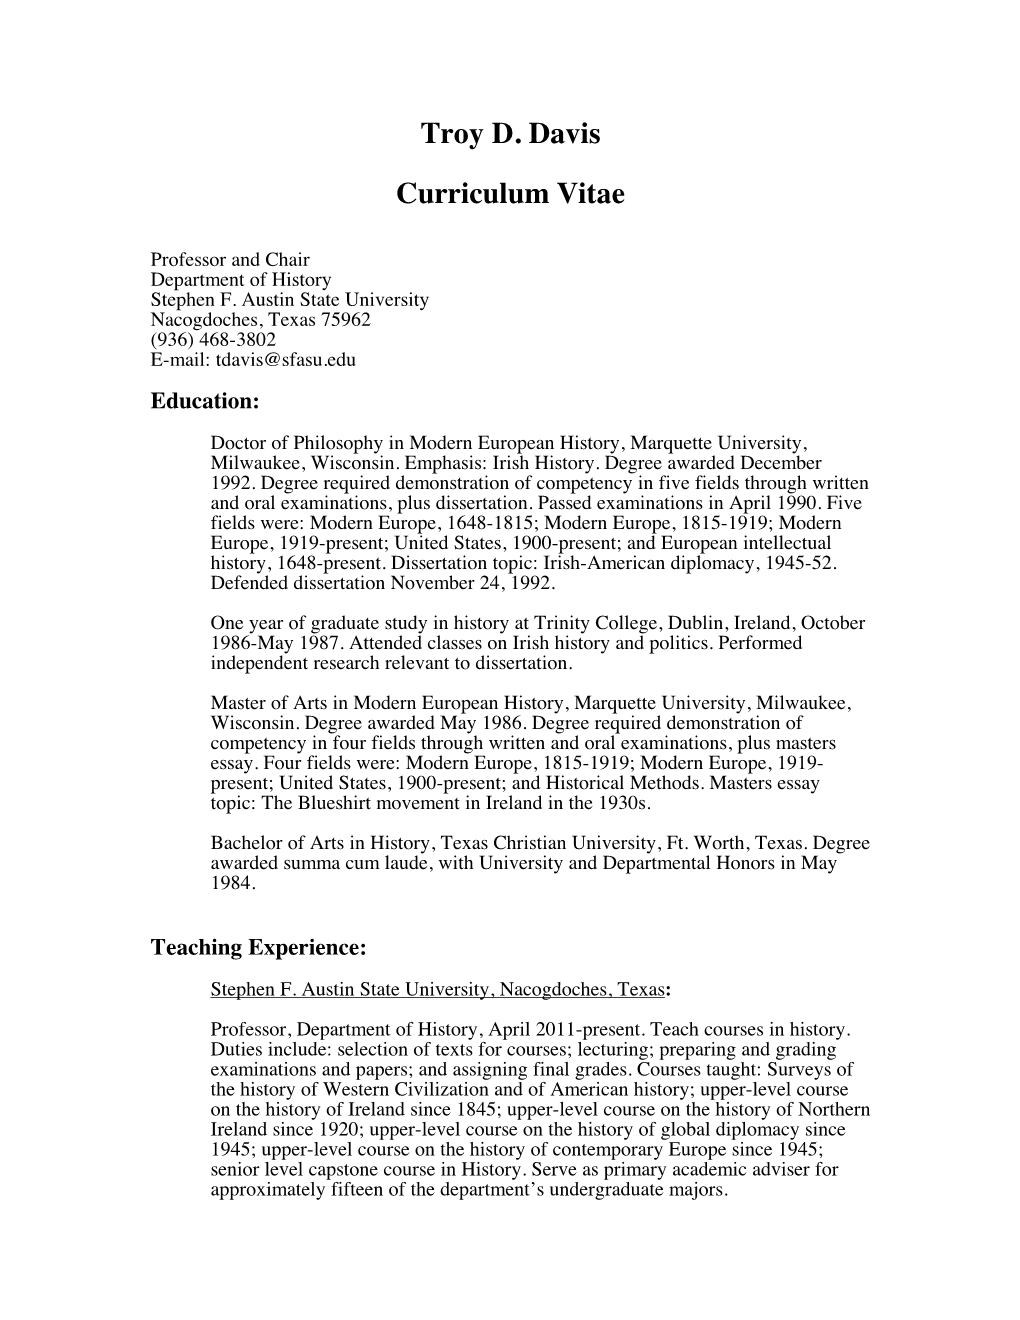 Troy D. Davis Curriculum Vitae